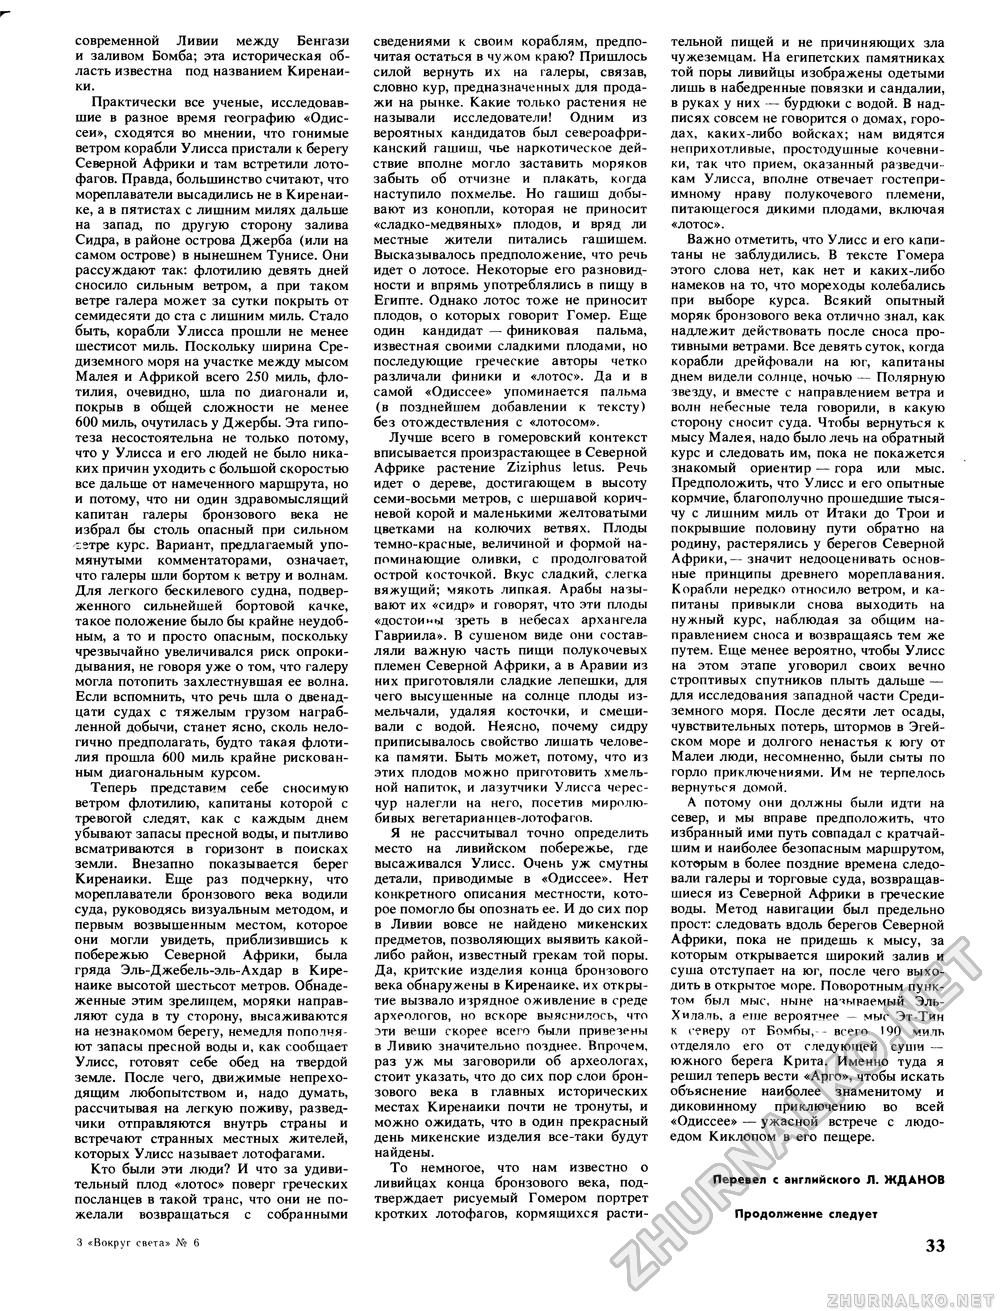 Вокруг света 1988-06, страница 35